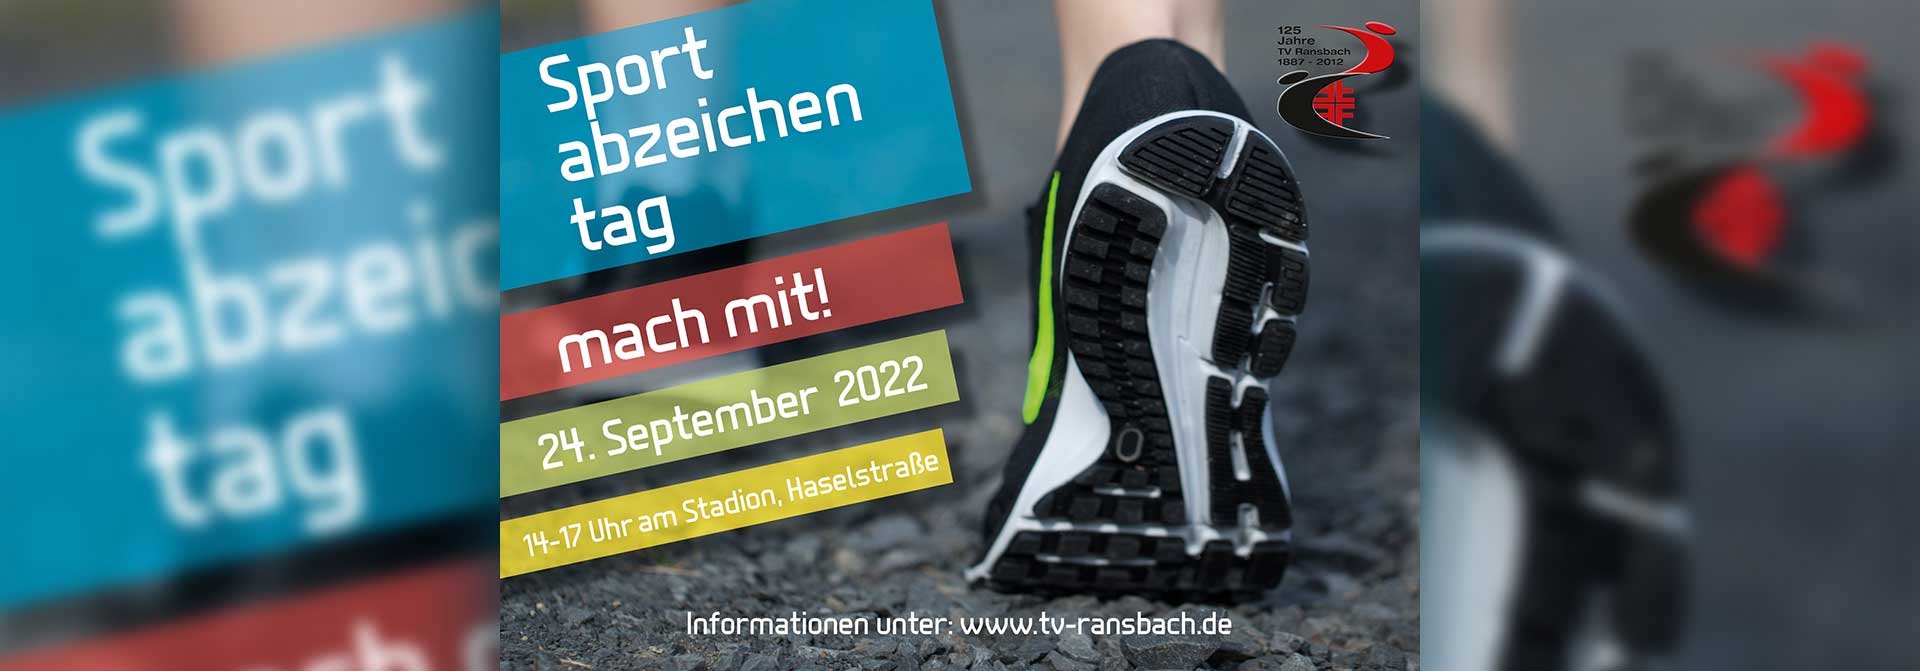 Sportabzeichentag 2022 TV Ransbach